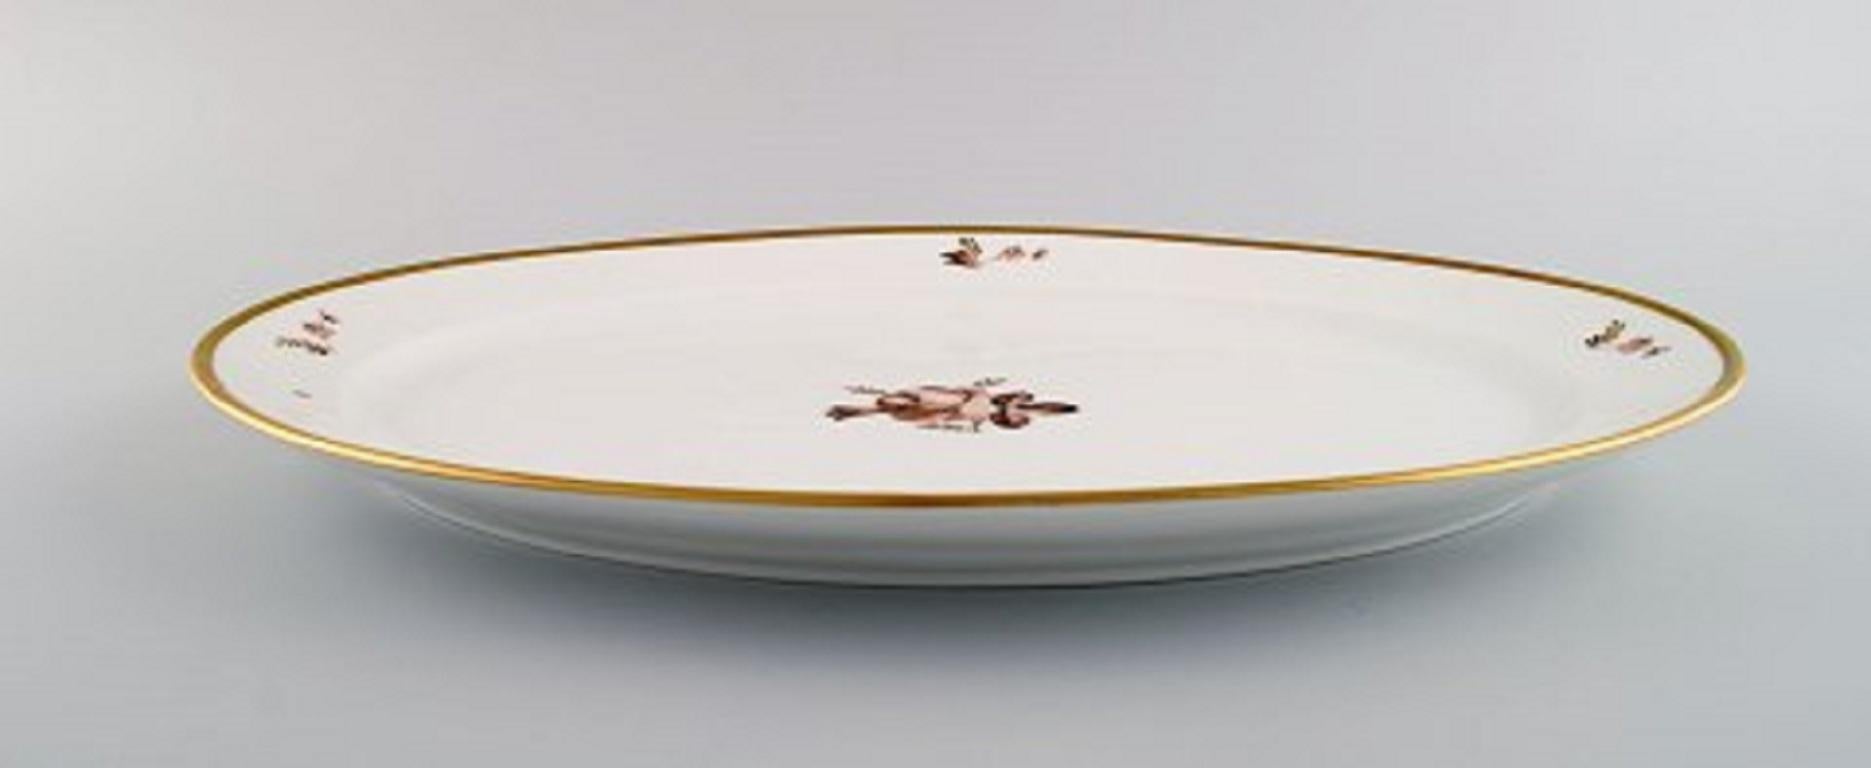 Ovale Royal Copenhagen Servierplatte mit brauner Rose. Modellnummer 688/9010. 
Datiert 1962. 
Zwei Gerichte verfügbar.
Maße: 41 x 30 cm.
In ausgezeichnetem Zustand.
Gestempelt.
1. Fabrikqualität.